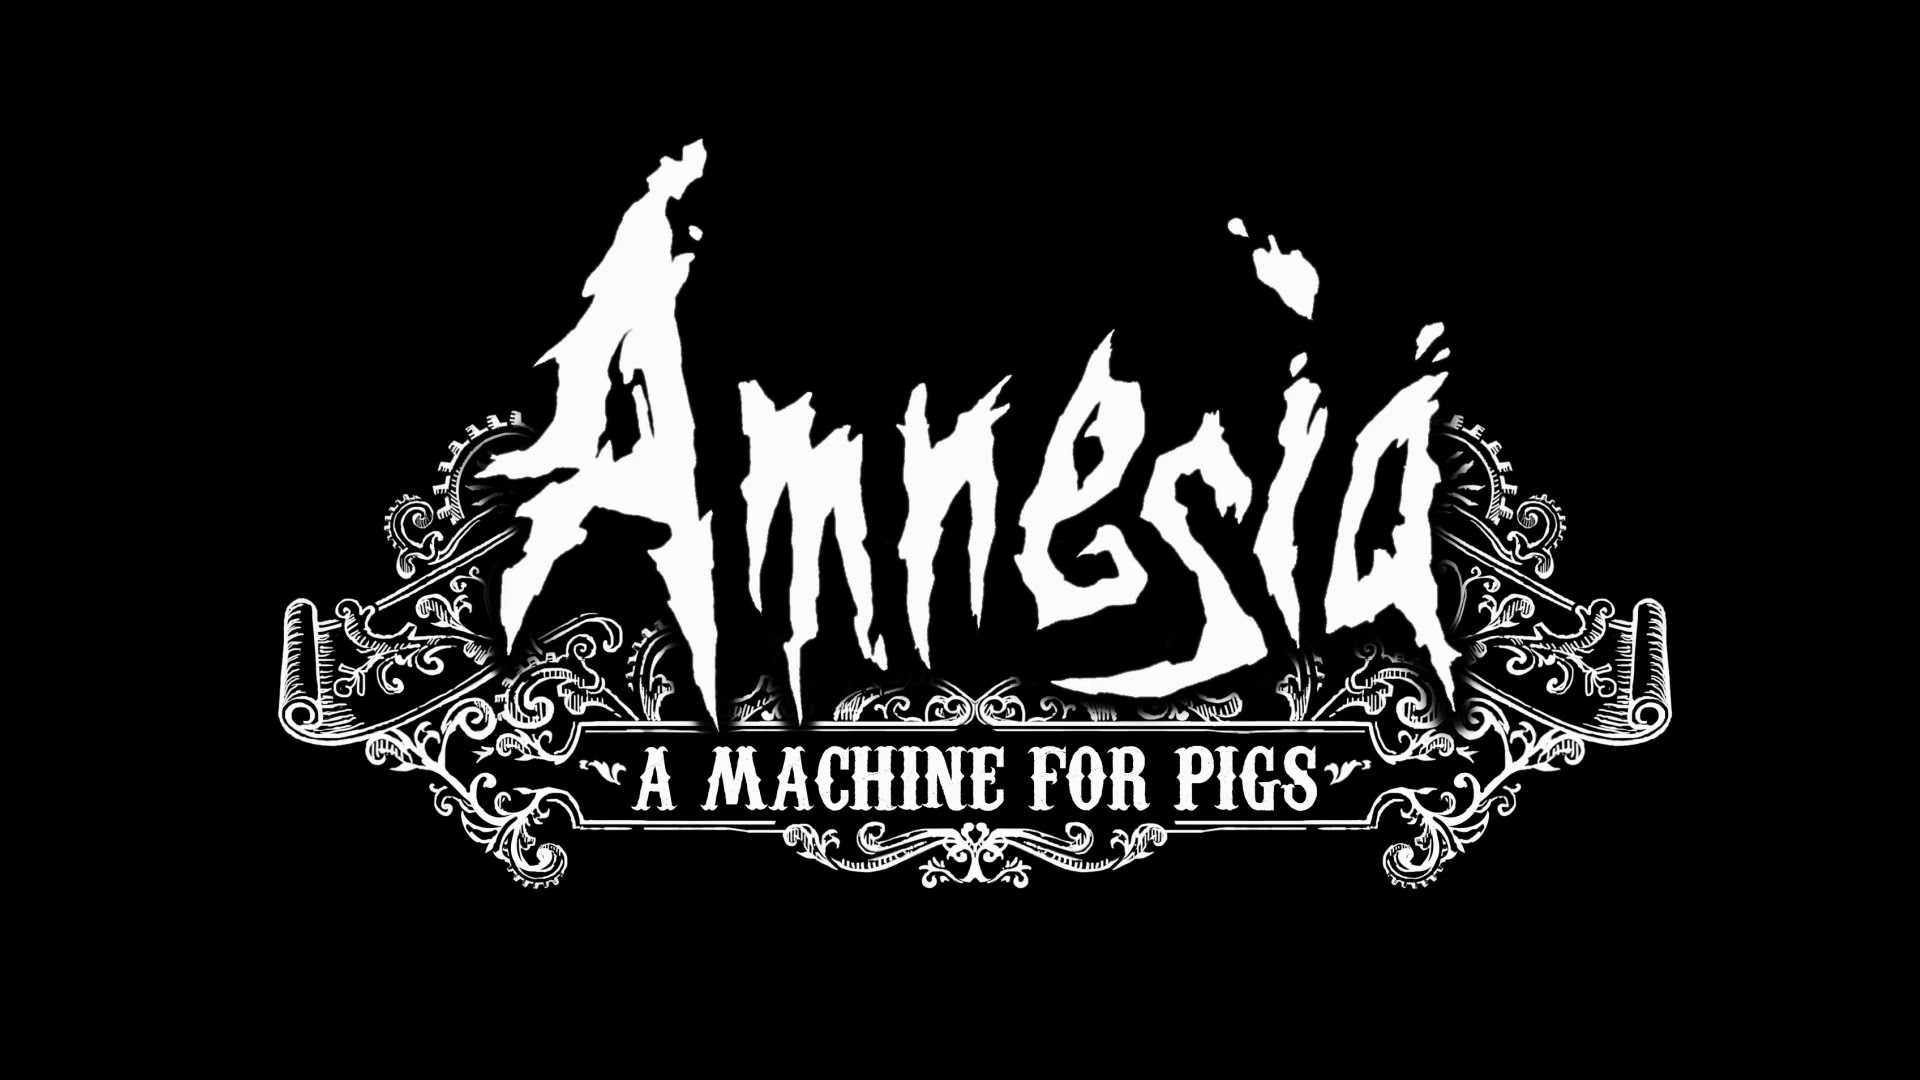 Obrint les comportes. Amnesia: A machine for pigs #10 de GamingCatala